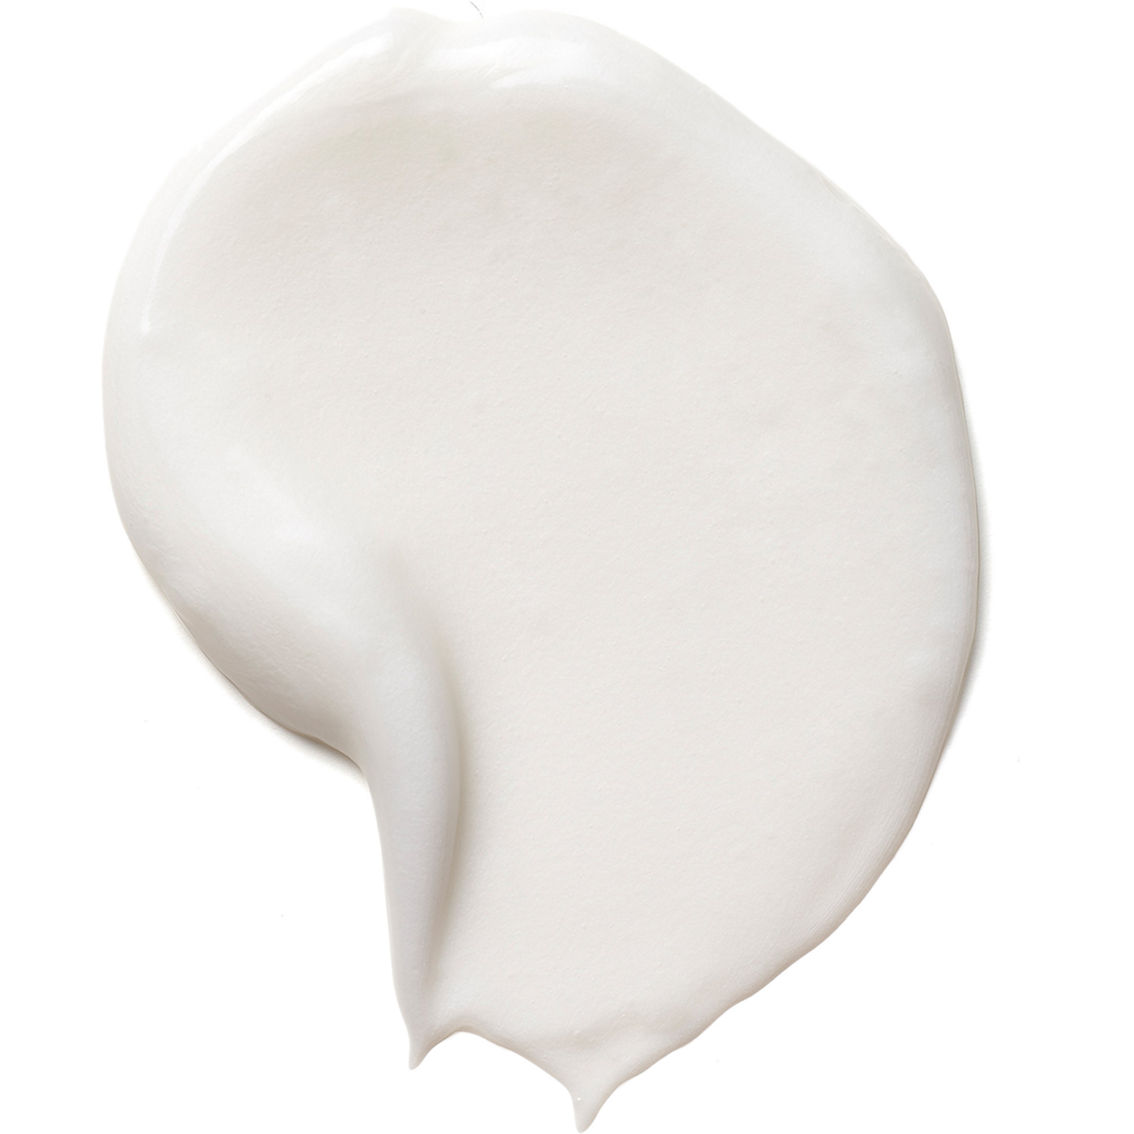 Moroccanoil Curl Defining Cream 8.5 oz. - Image 2 of 3